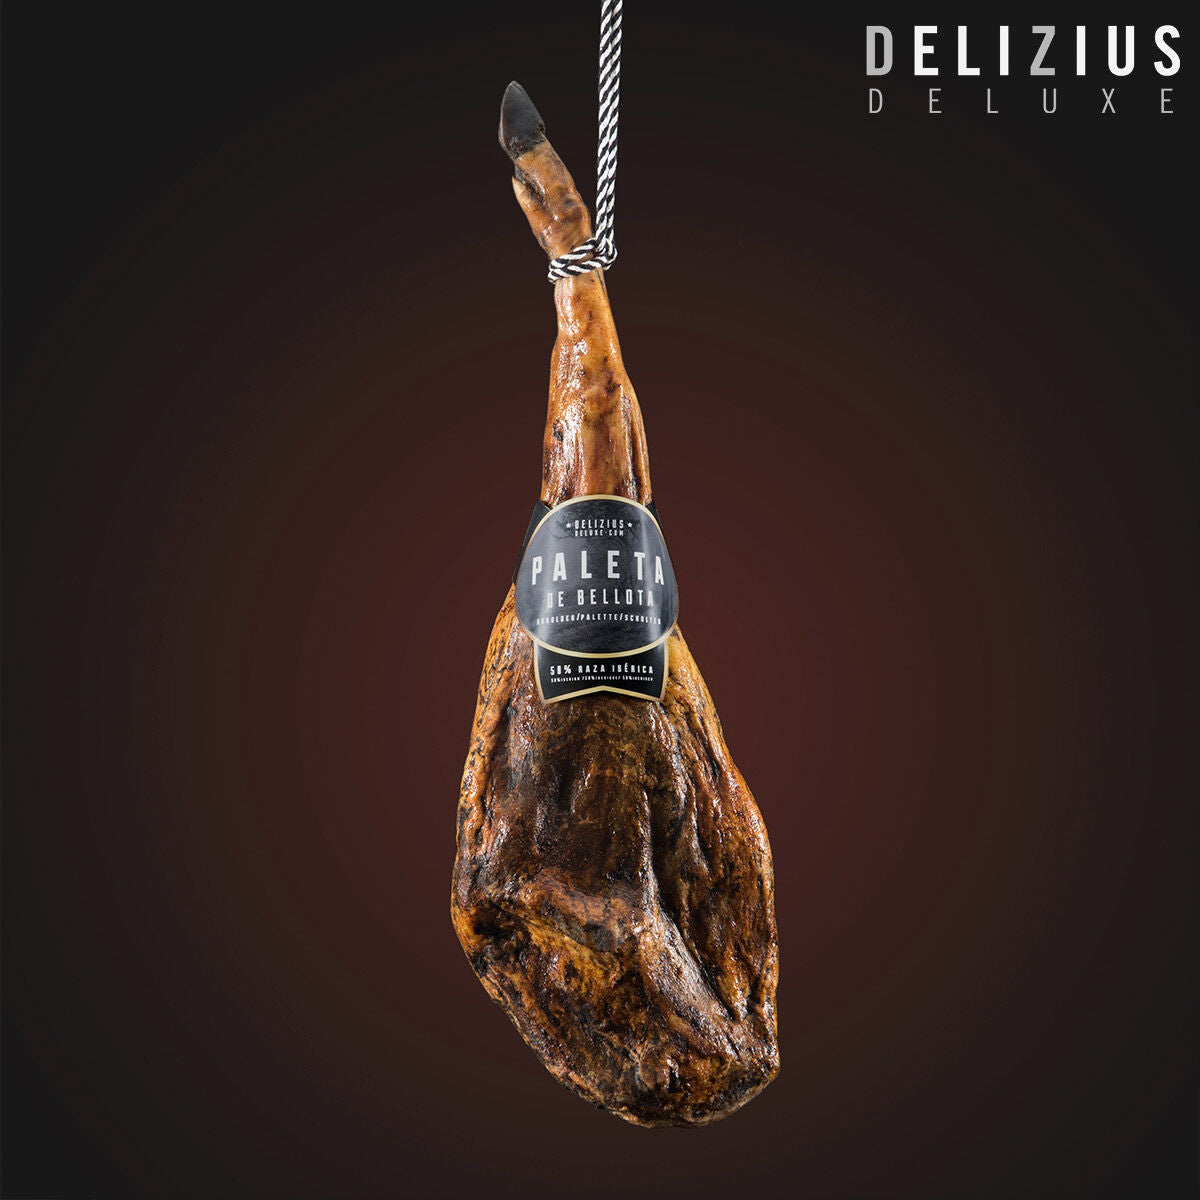 Iberische schouder van een met eikels gevoerd varken Delizius Deluxe 5-5,5 Kg